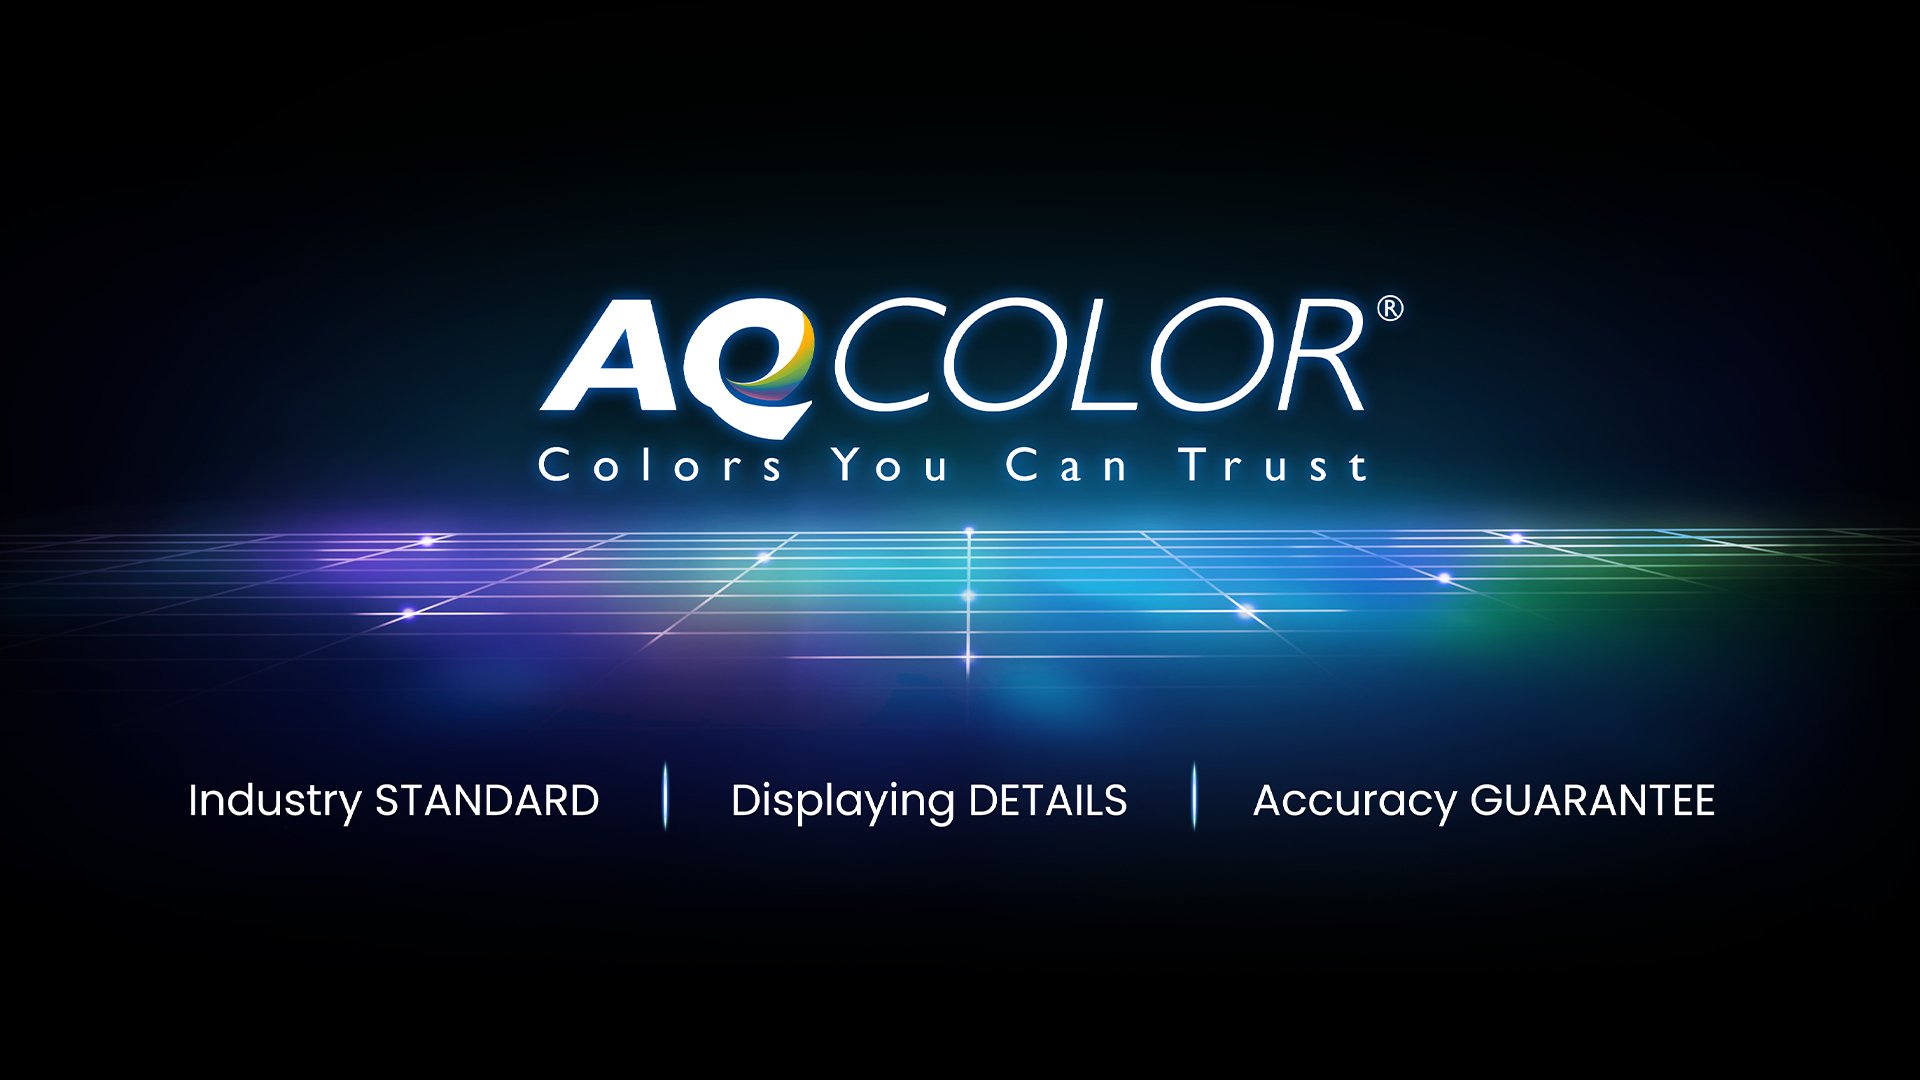 Die BenQ AQCOLOR-Technologie sorgt für eine genaue Wiedergabe. Dies führt dazu, dass die Farbe genau so angezeigt wird, wie sie erscheinen soll. Unter der Leitung eines Farbexperten beteiligte sich das BenQ-Team an ICC und ISO, um farbbezogene Standards und Implementierungsrichtlinien festzulegen.